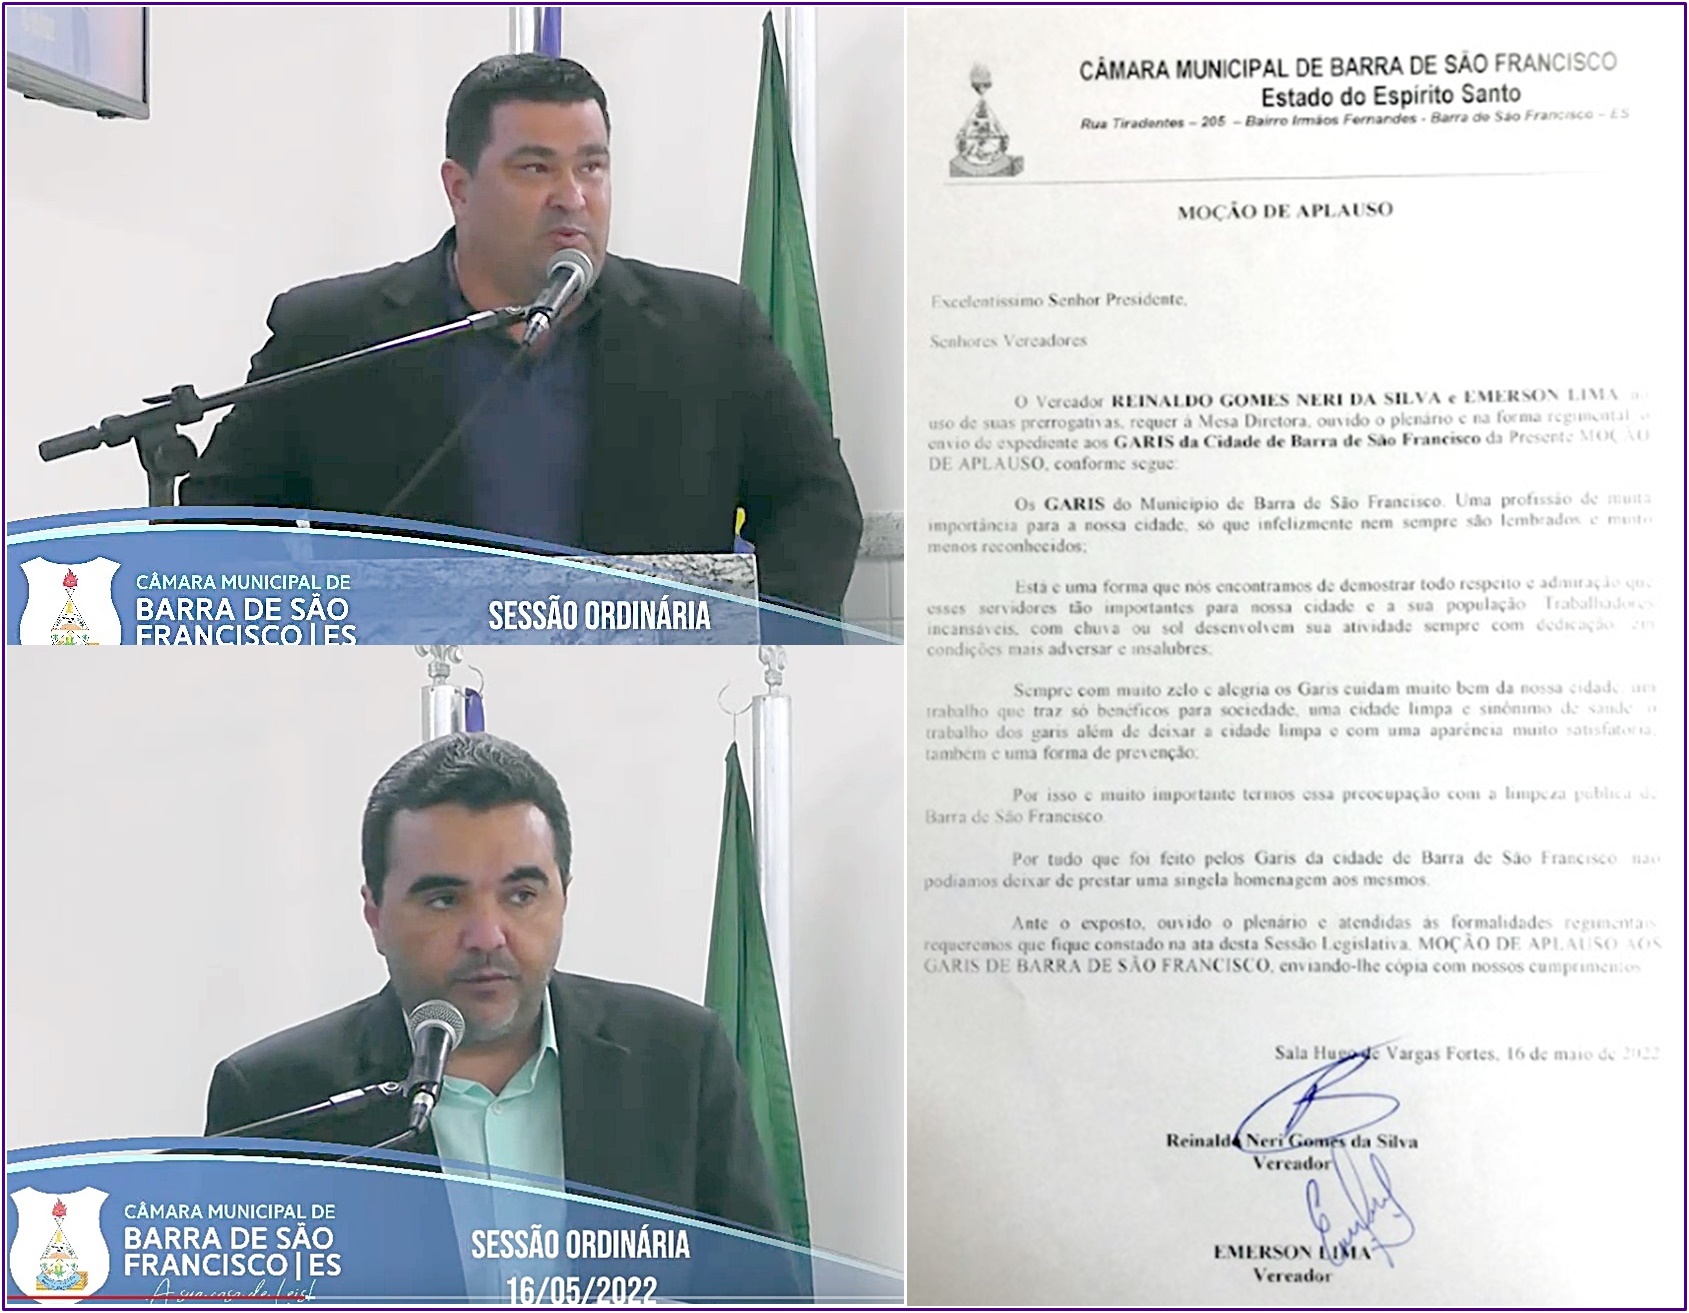 Vereadores Reinaldo Neri e Emerson Lima apresentam Moção de Aplauso para servidores Garis